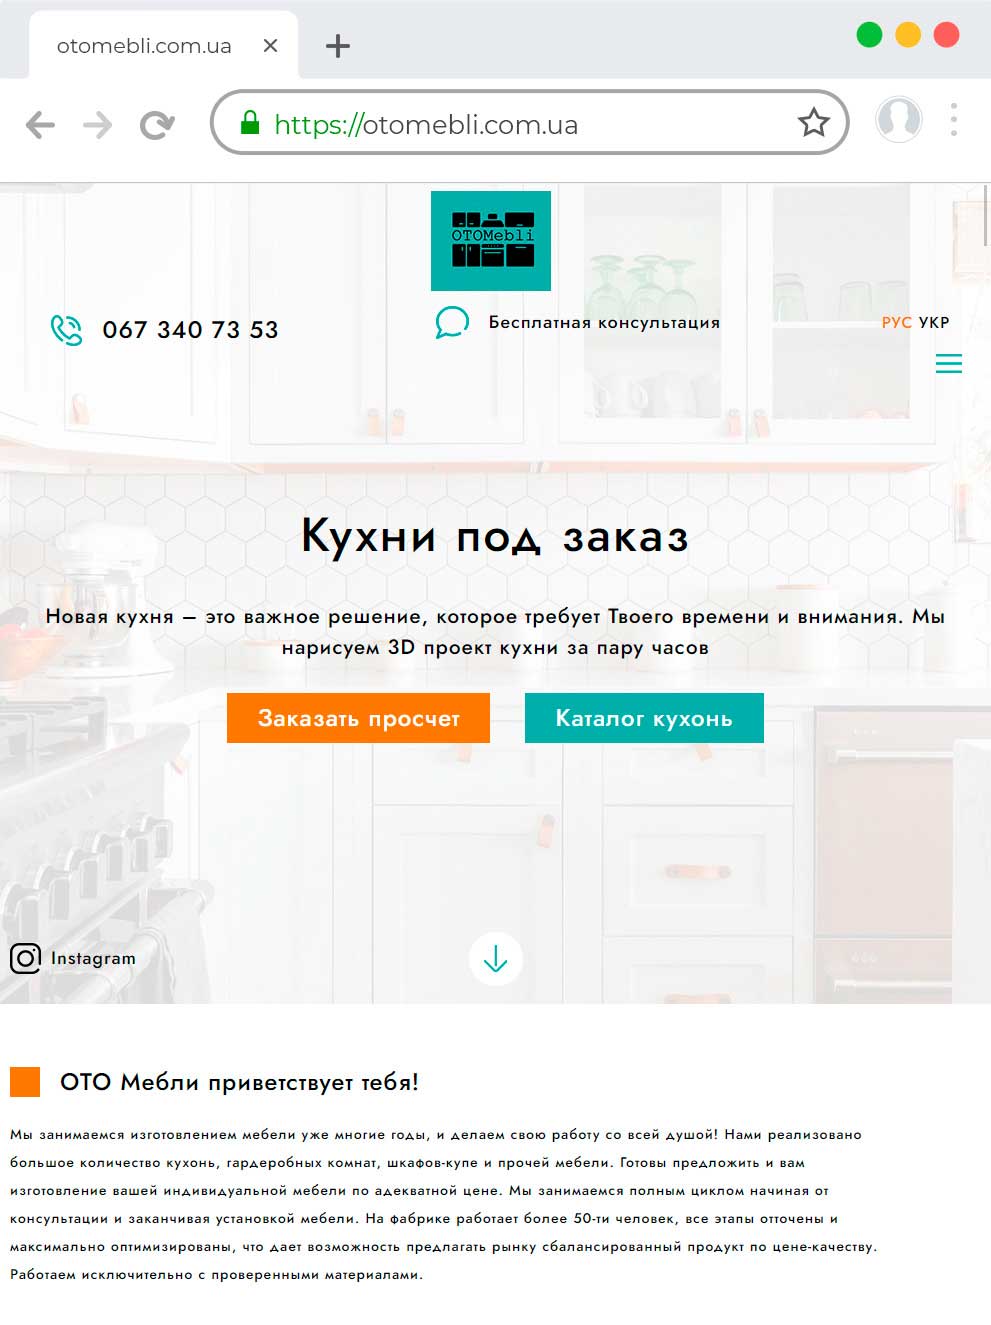 Создание сайта по изготовлении кухонь на заказ otomebli.com.ua